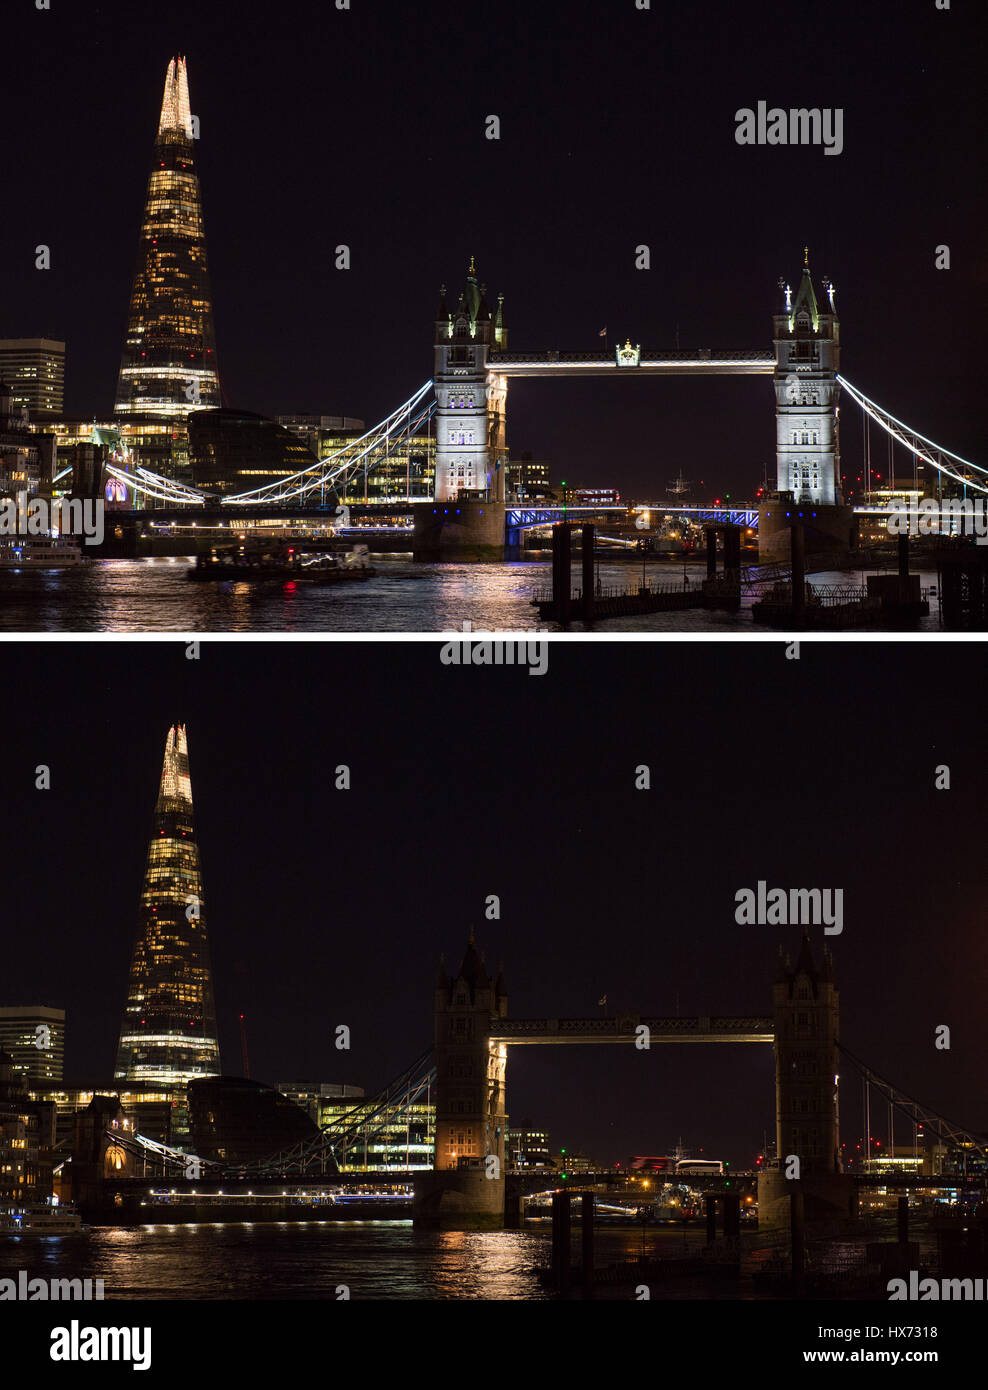 Tower Bridge im Zentrum von London vor und nach dem Ausschalten der Lichter für eine Stunde anlässlich WWFs Earth Hour Bewusstsein über den Klimawandel. Stockfoto